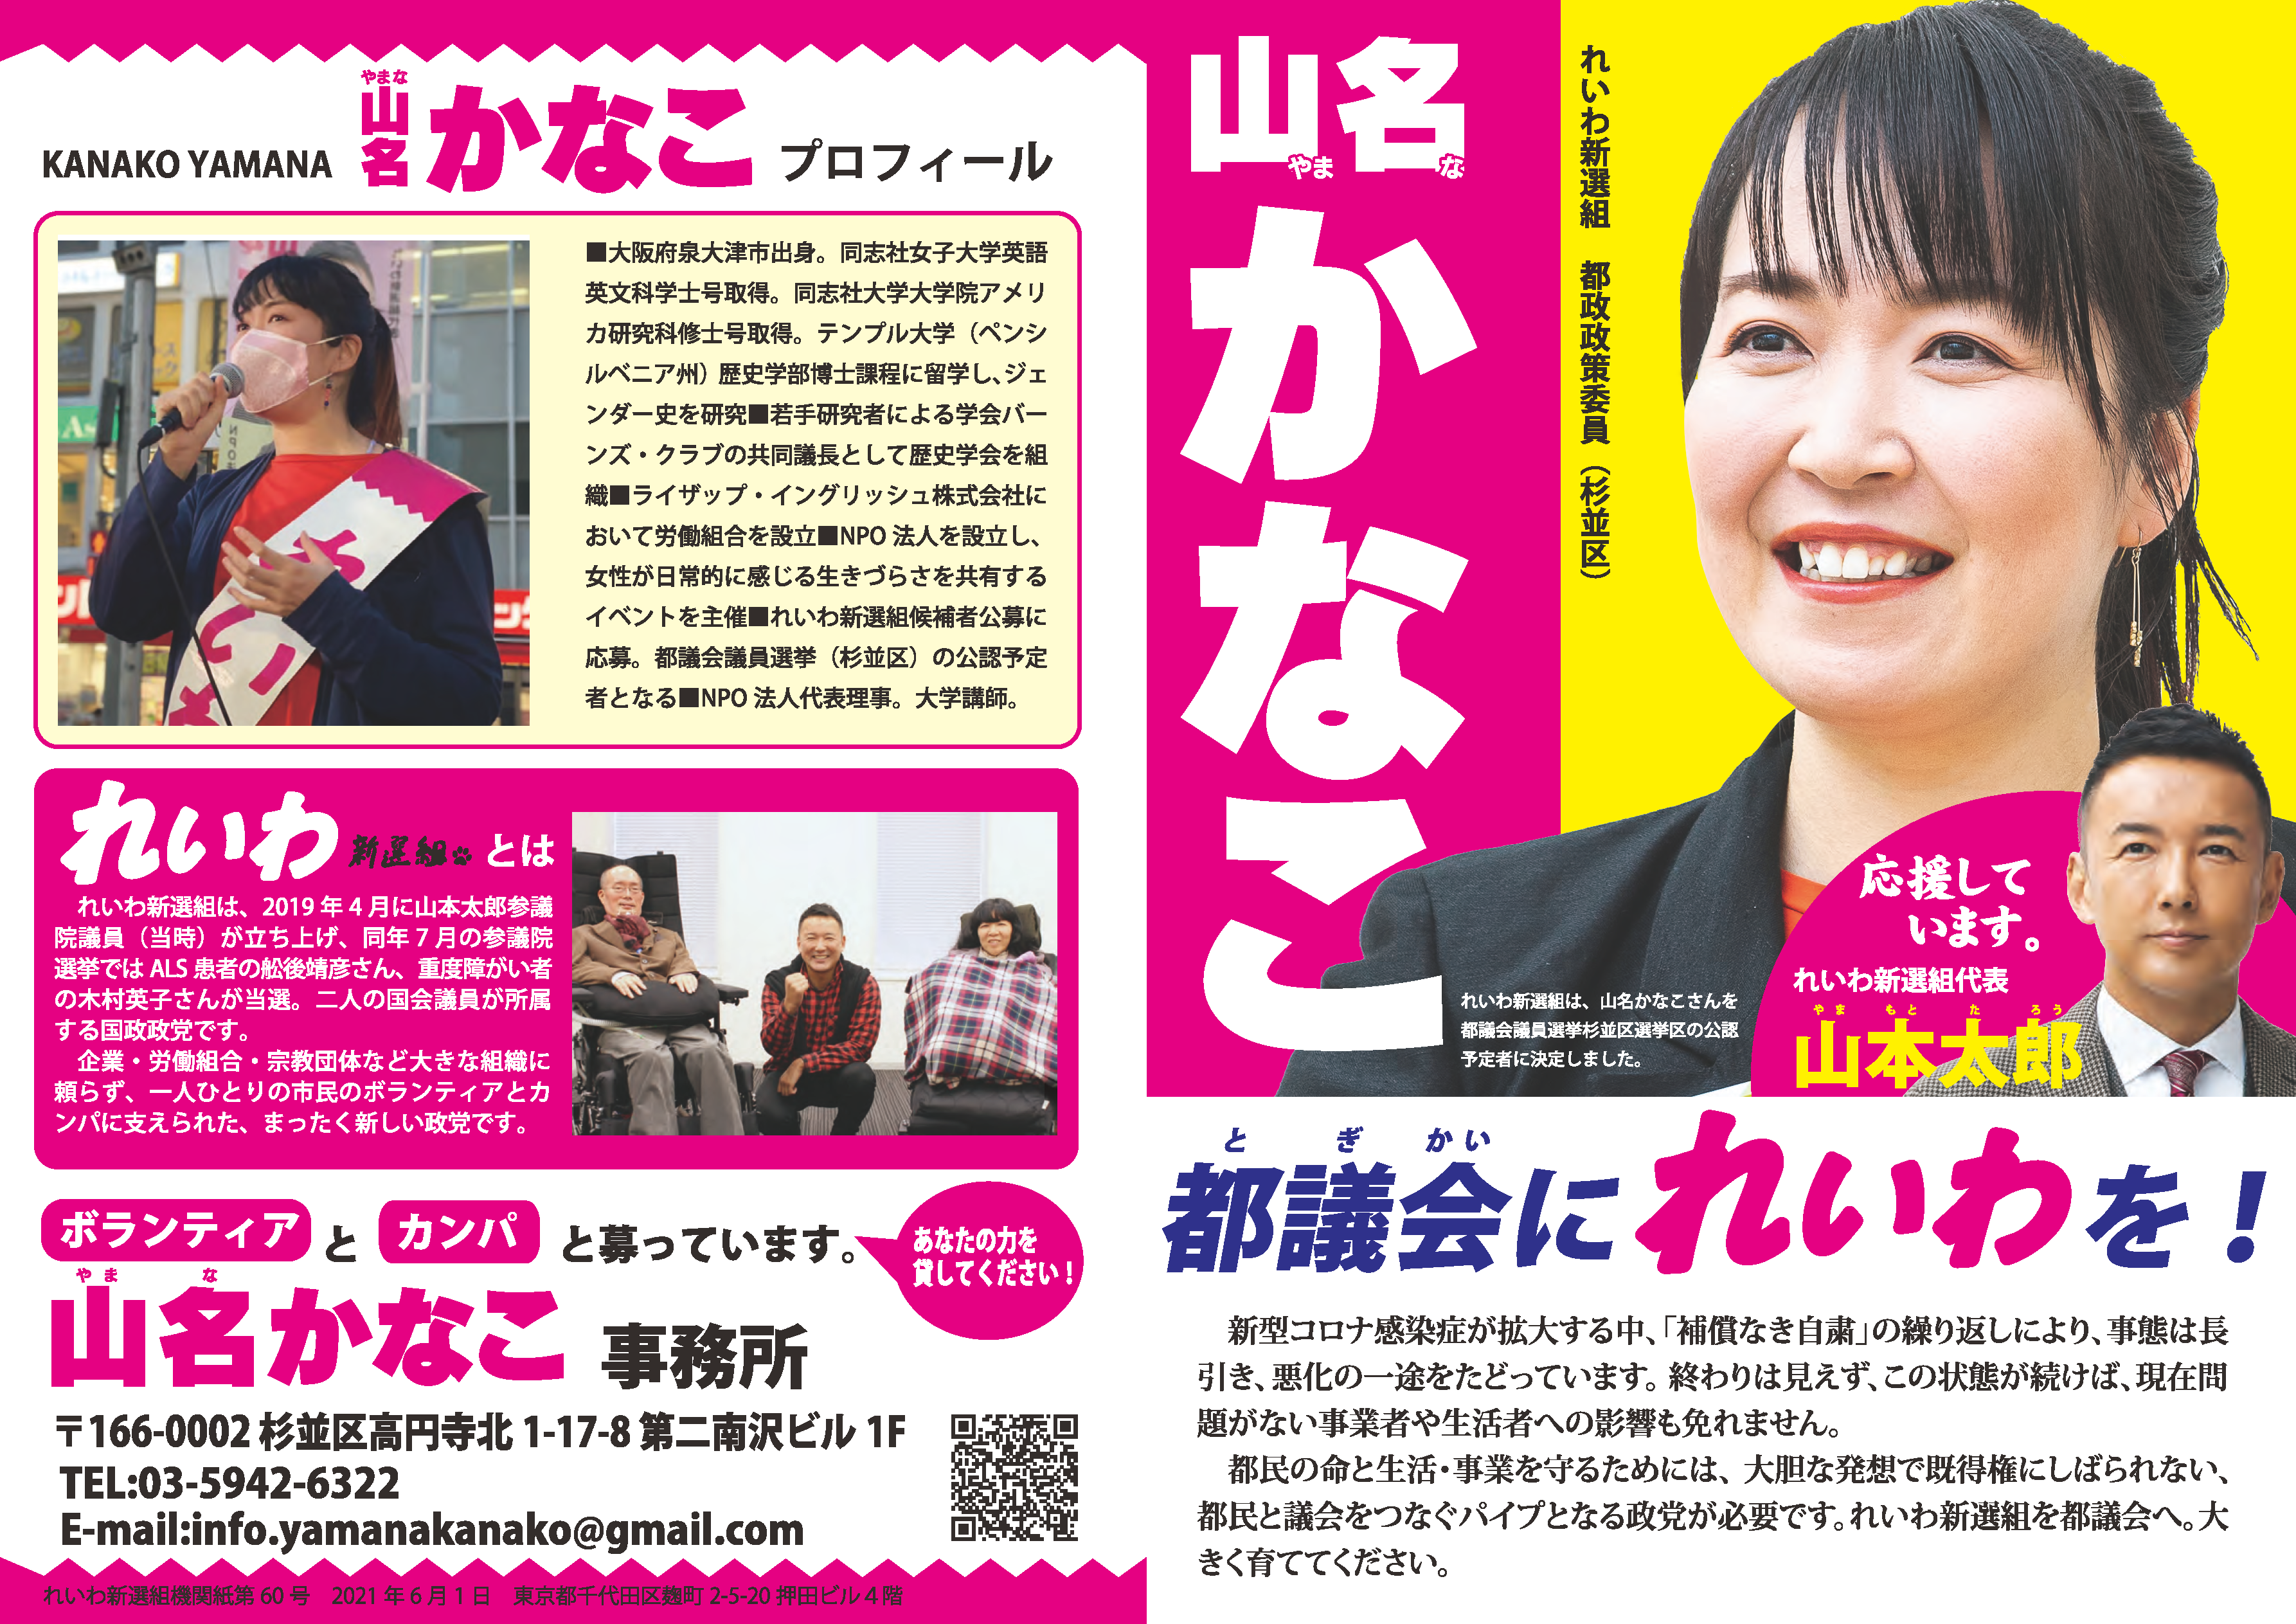 東京都議会議員選挙21 特設ページ れいわ新選組